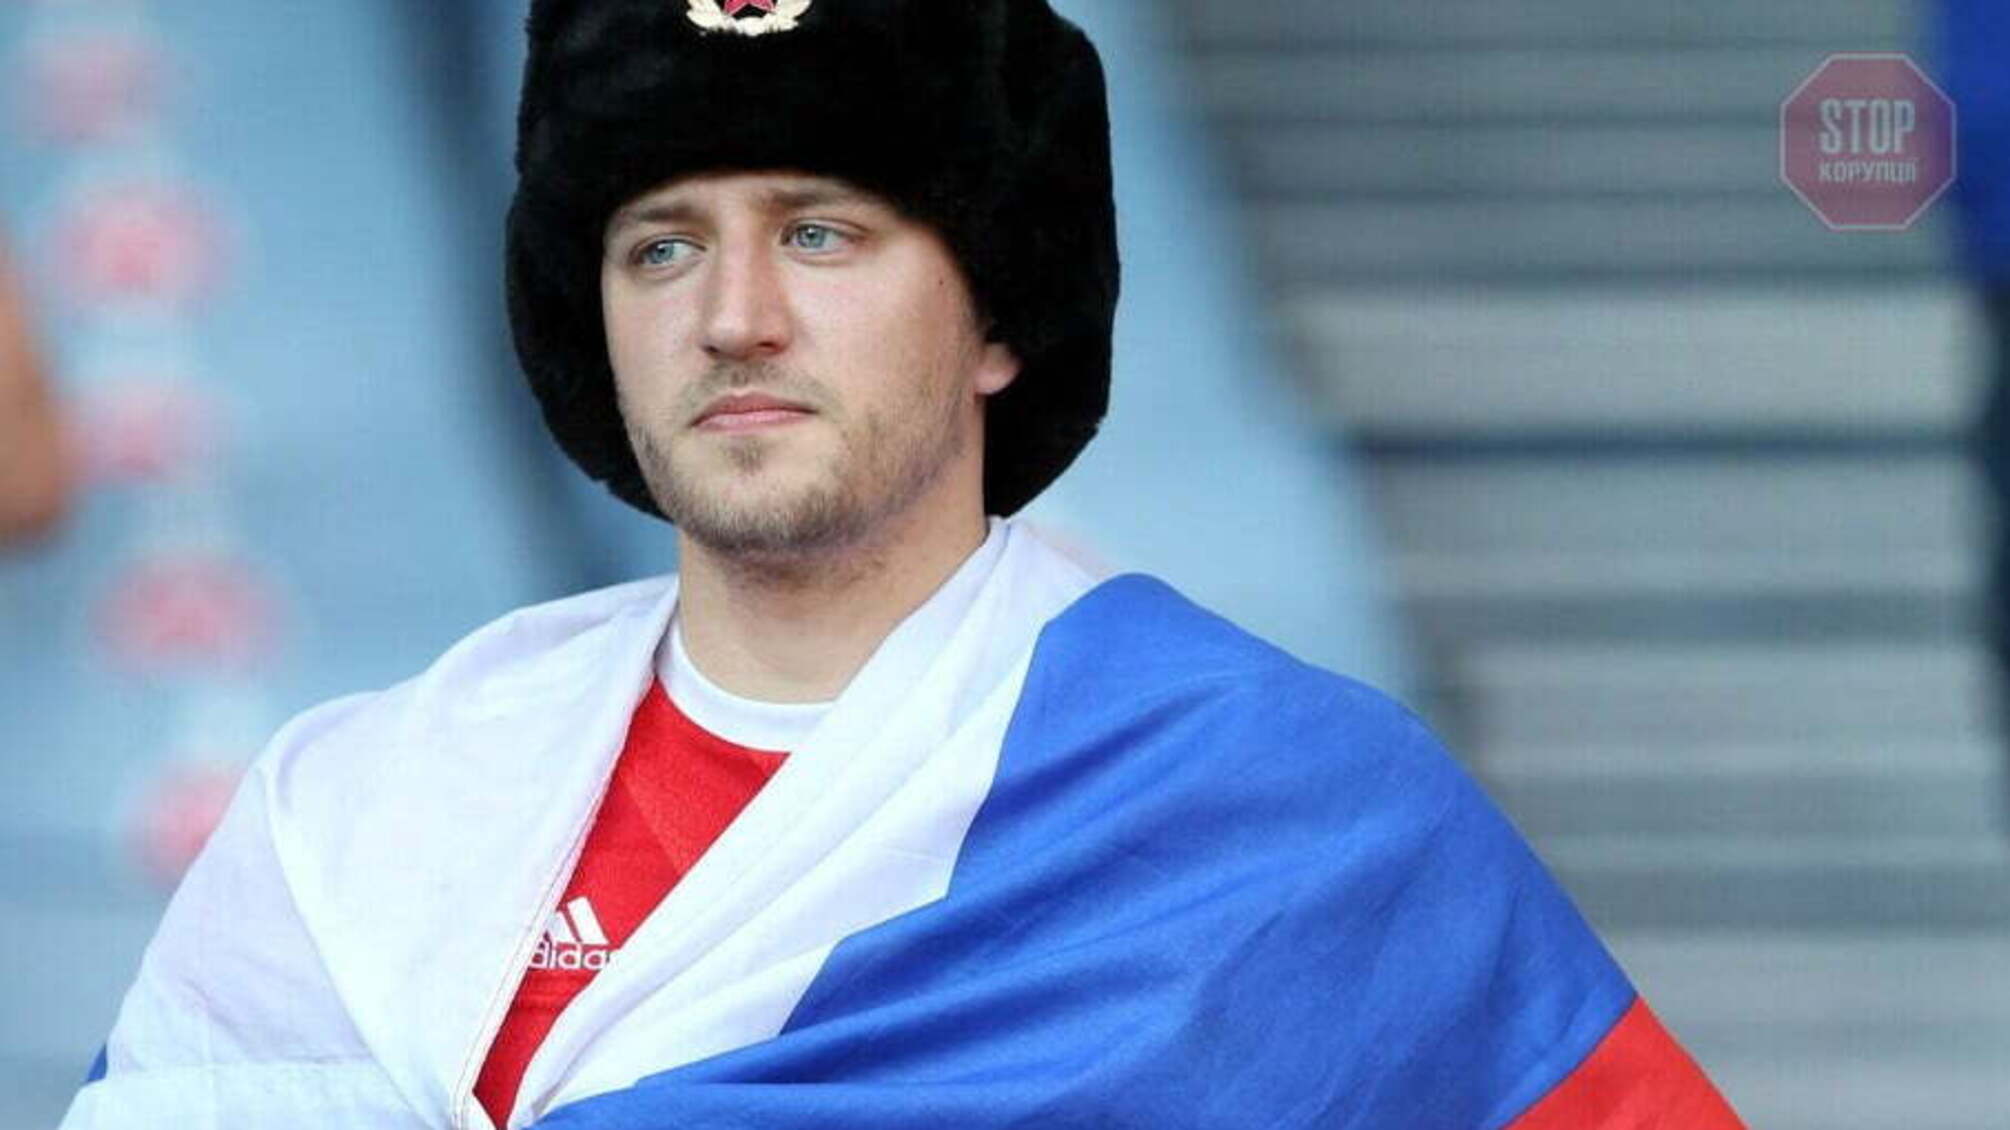 Фаната, який відлупцював вболівальника з російським прапором, затримали